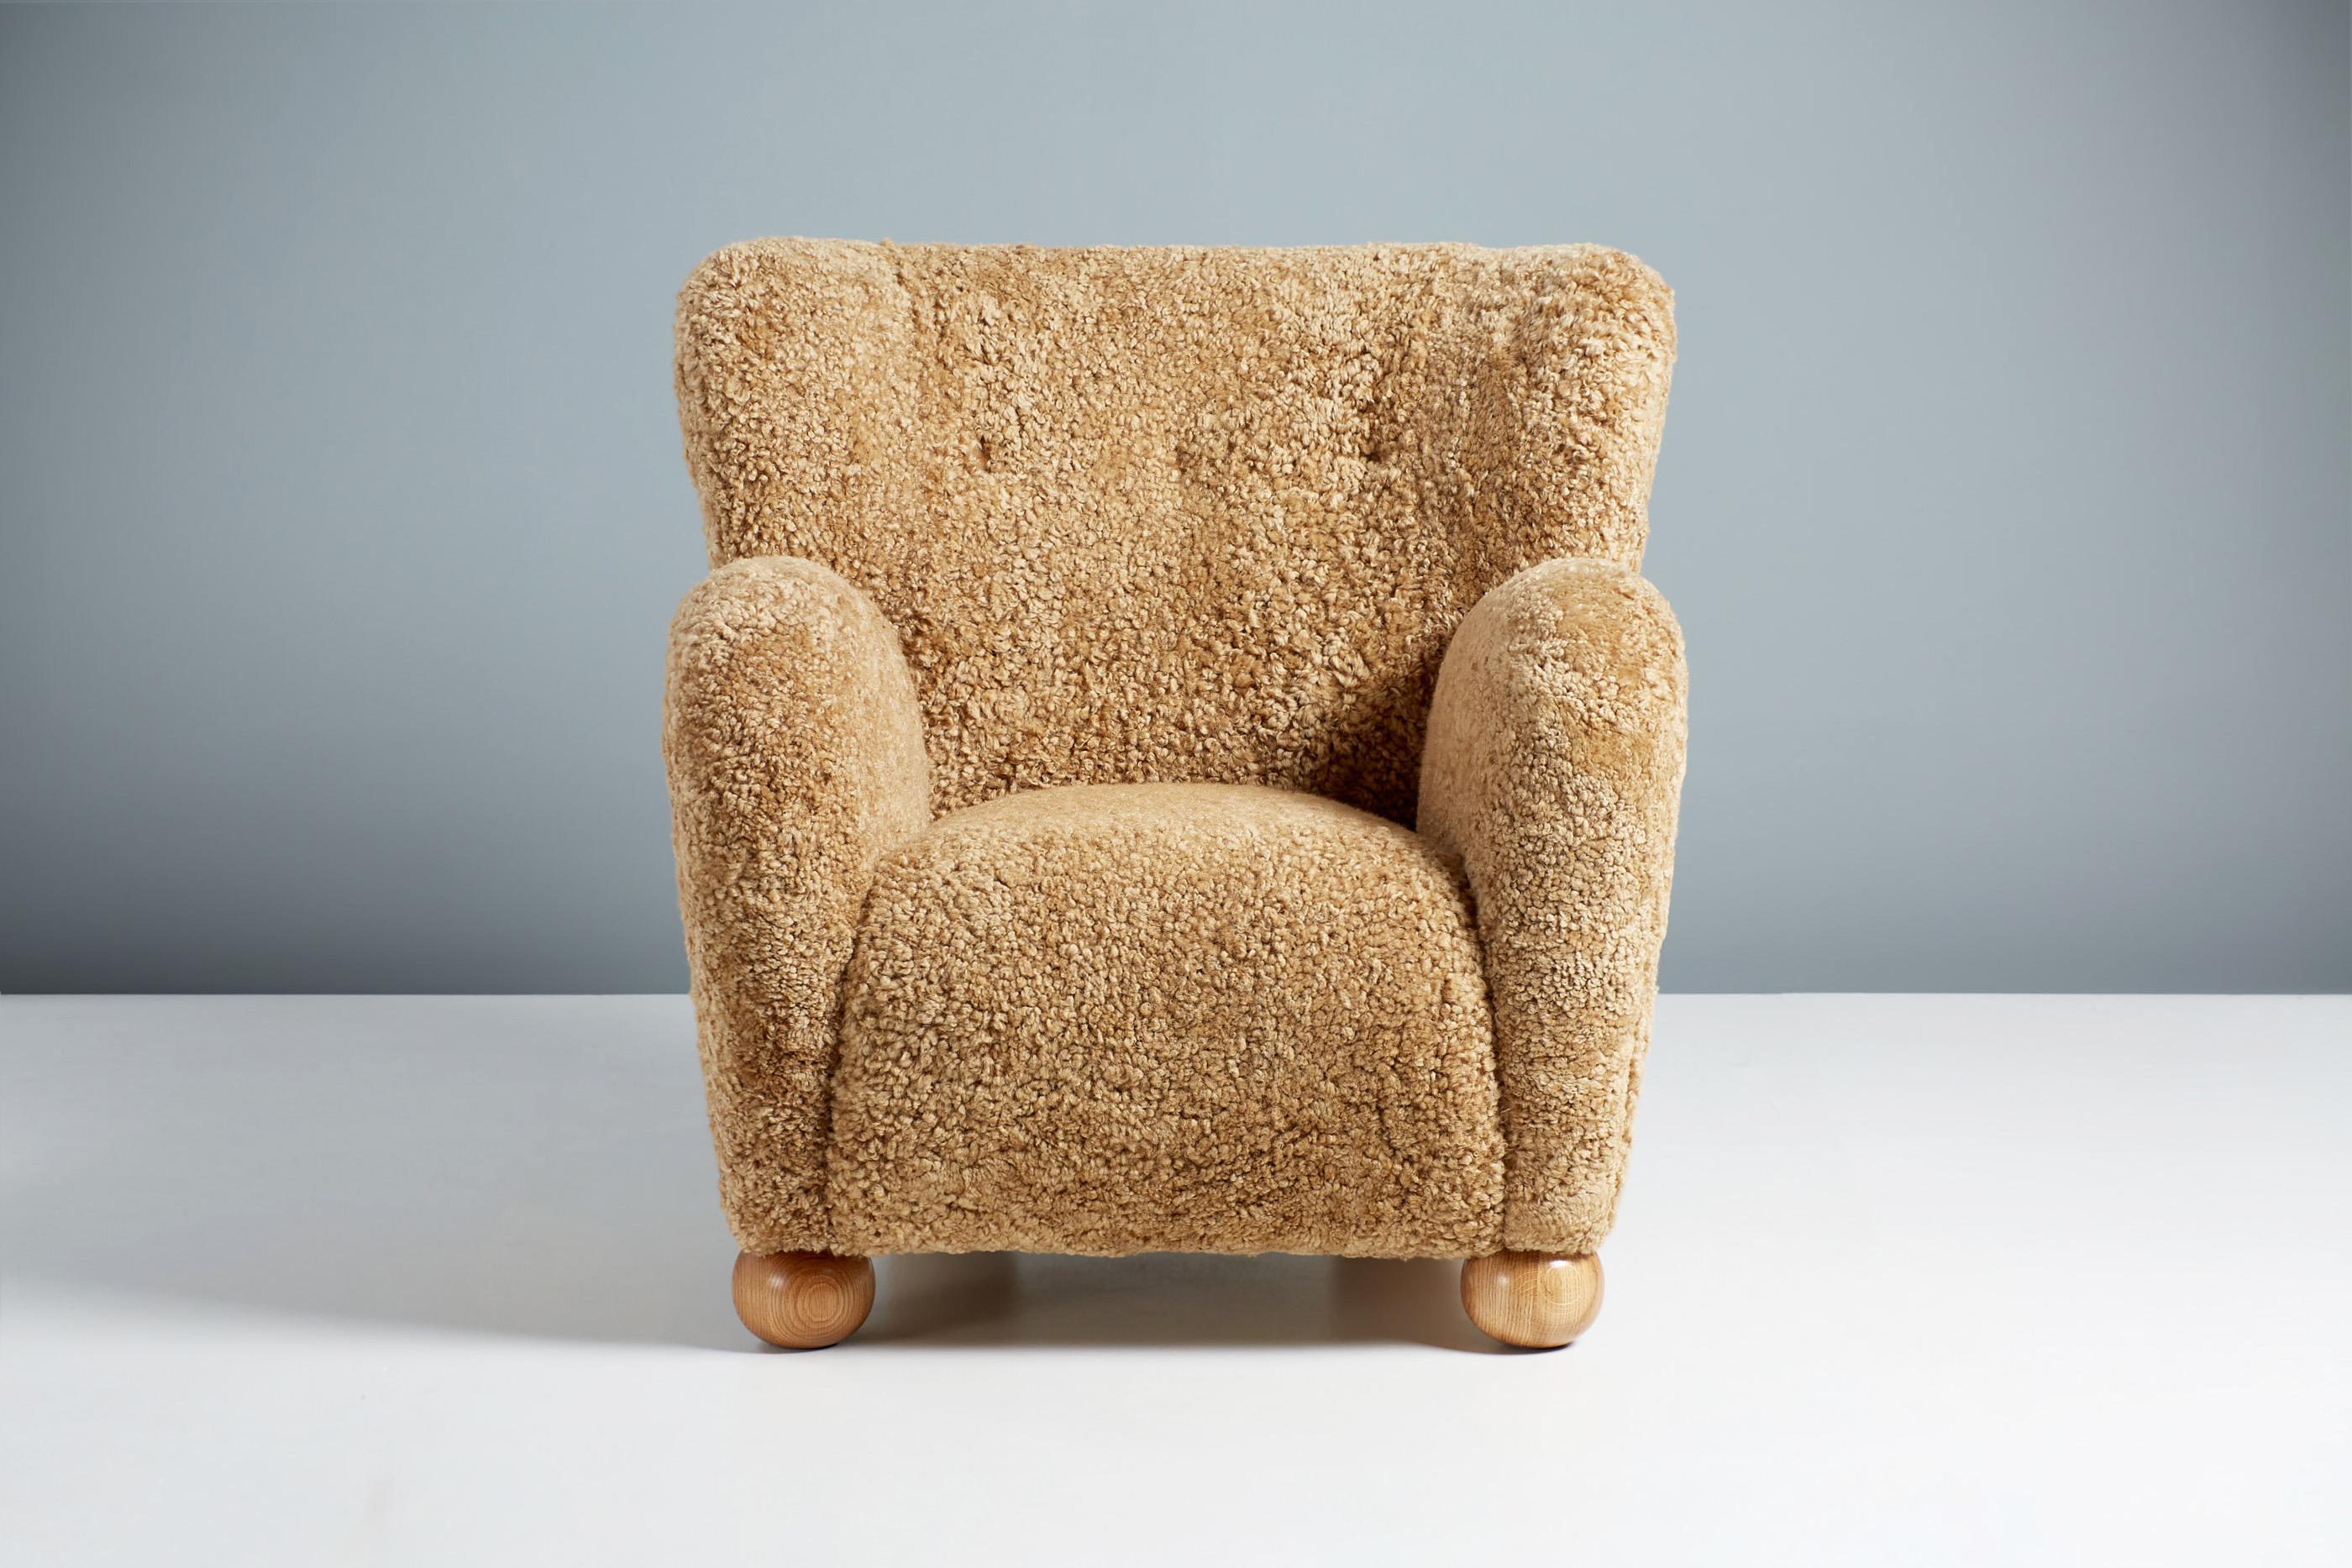 Dagmar Design - Fauteuil Karu

Cette paire de fauteuils est fabriquée à la main sur commande dans nos ateliers au Royaume-Uni, avec un cadre en bois de hêtre massif et une assise entièrement suspendue. Les pieds ronds sont disponibles en chêne